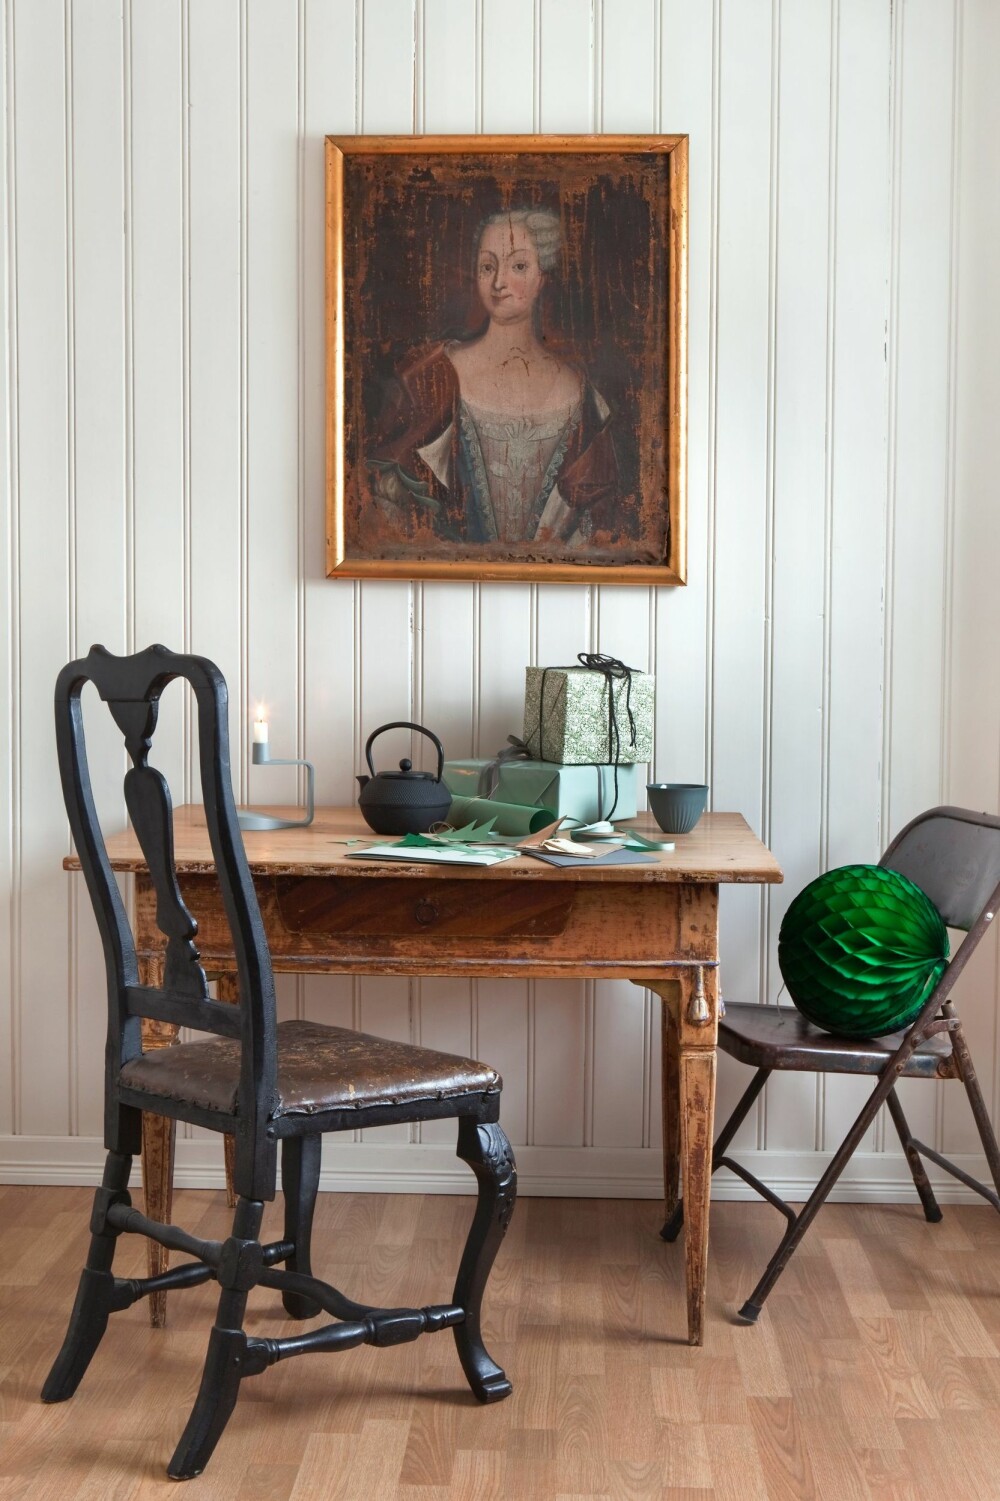 SPISEKROK: Denne lille kroken på kjøkkenet innbyr til en hyggelig frokoststund. Stolen er fra 1700-tallet, det samme er maleriet. Klaffebordet fra 1800-tallet sto på gården der mannen er fra. Pompongen er fra Bolina. Lysestaken er fra Normann Copenhagen, og tekannen er fra No3.  
FOTO: Trine Thorsen